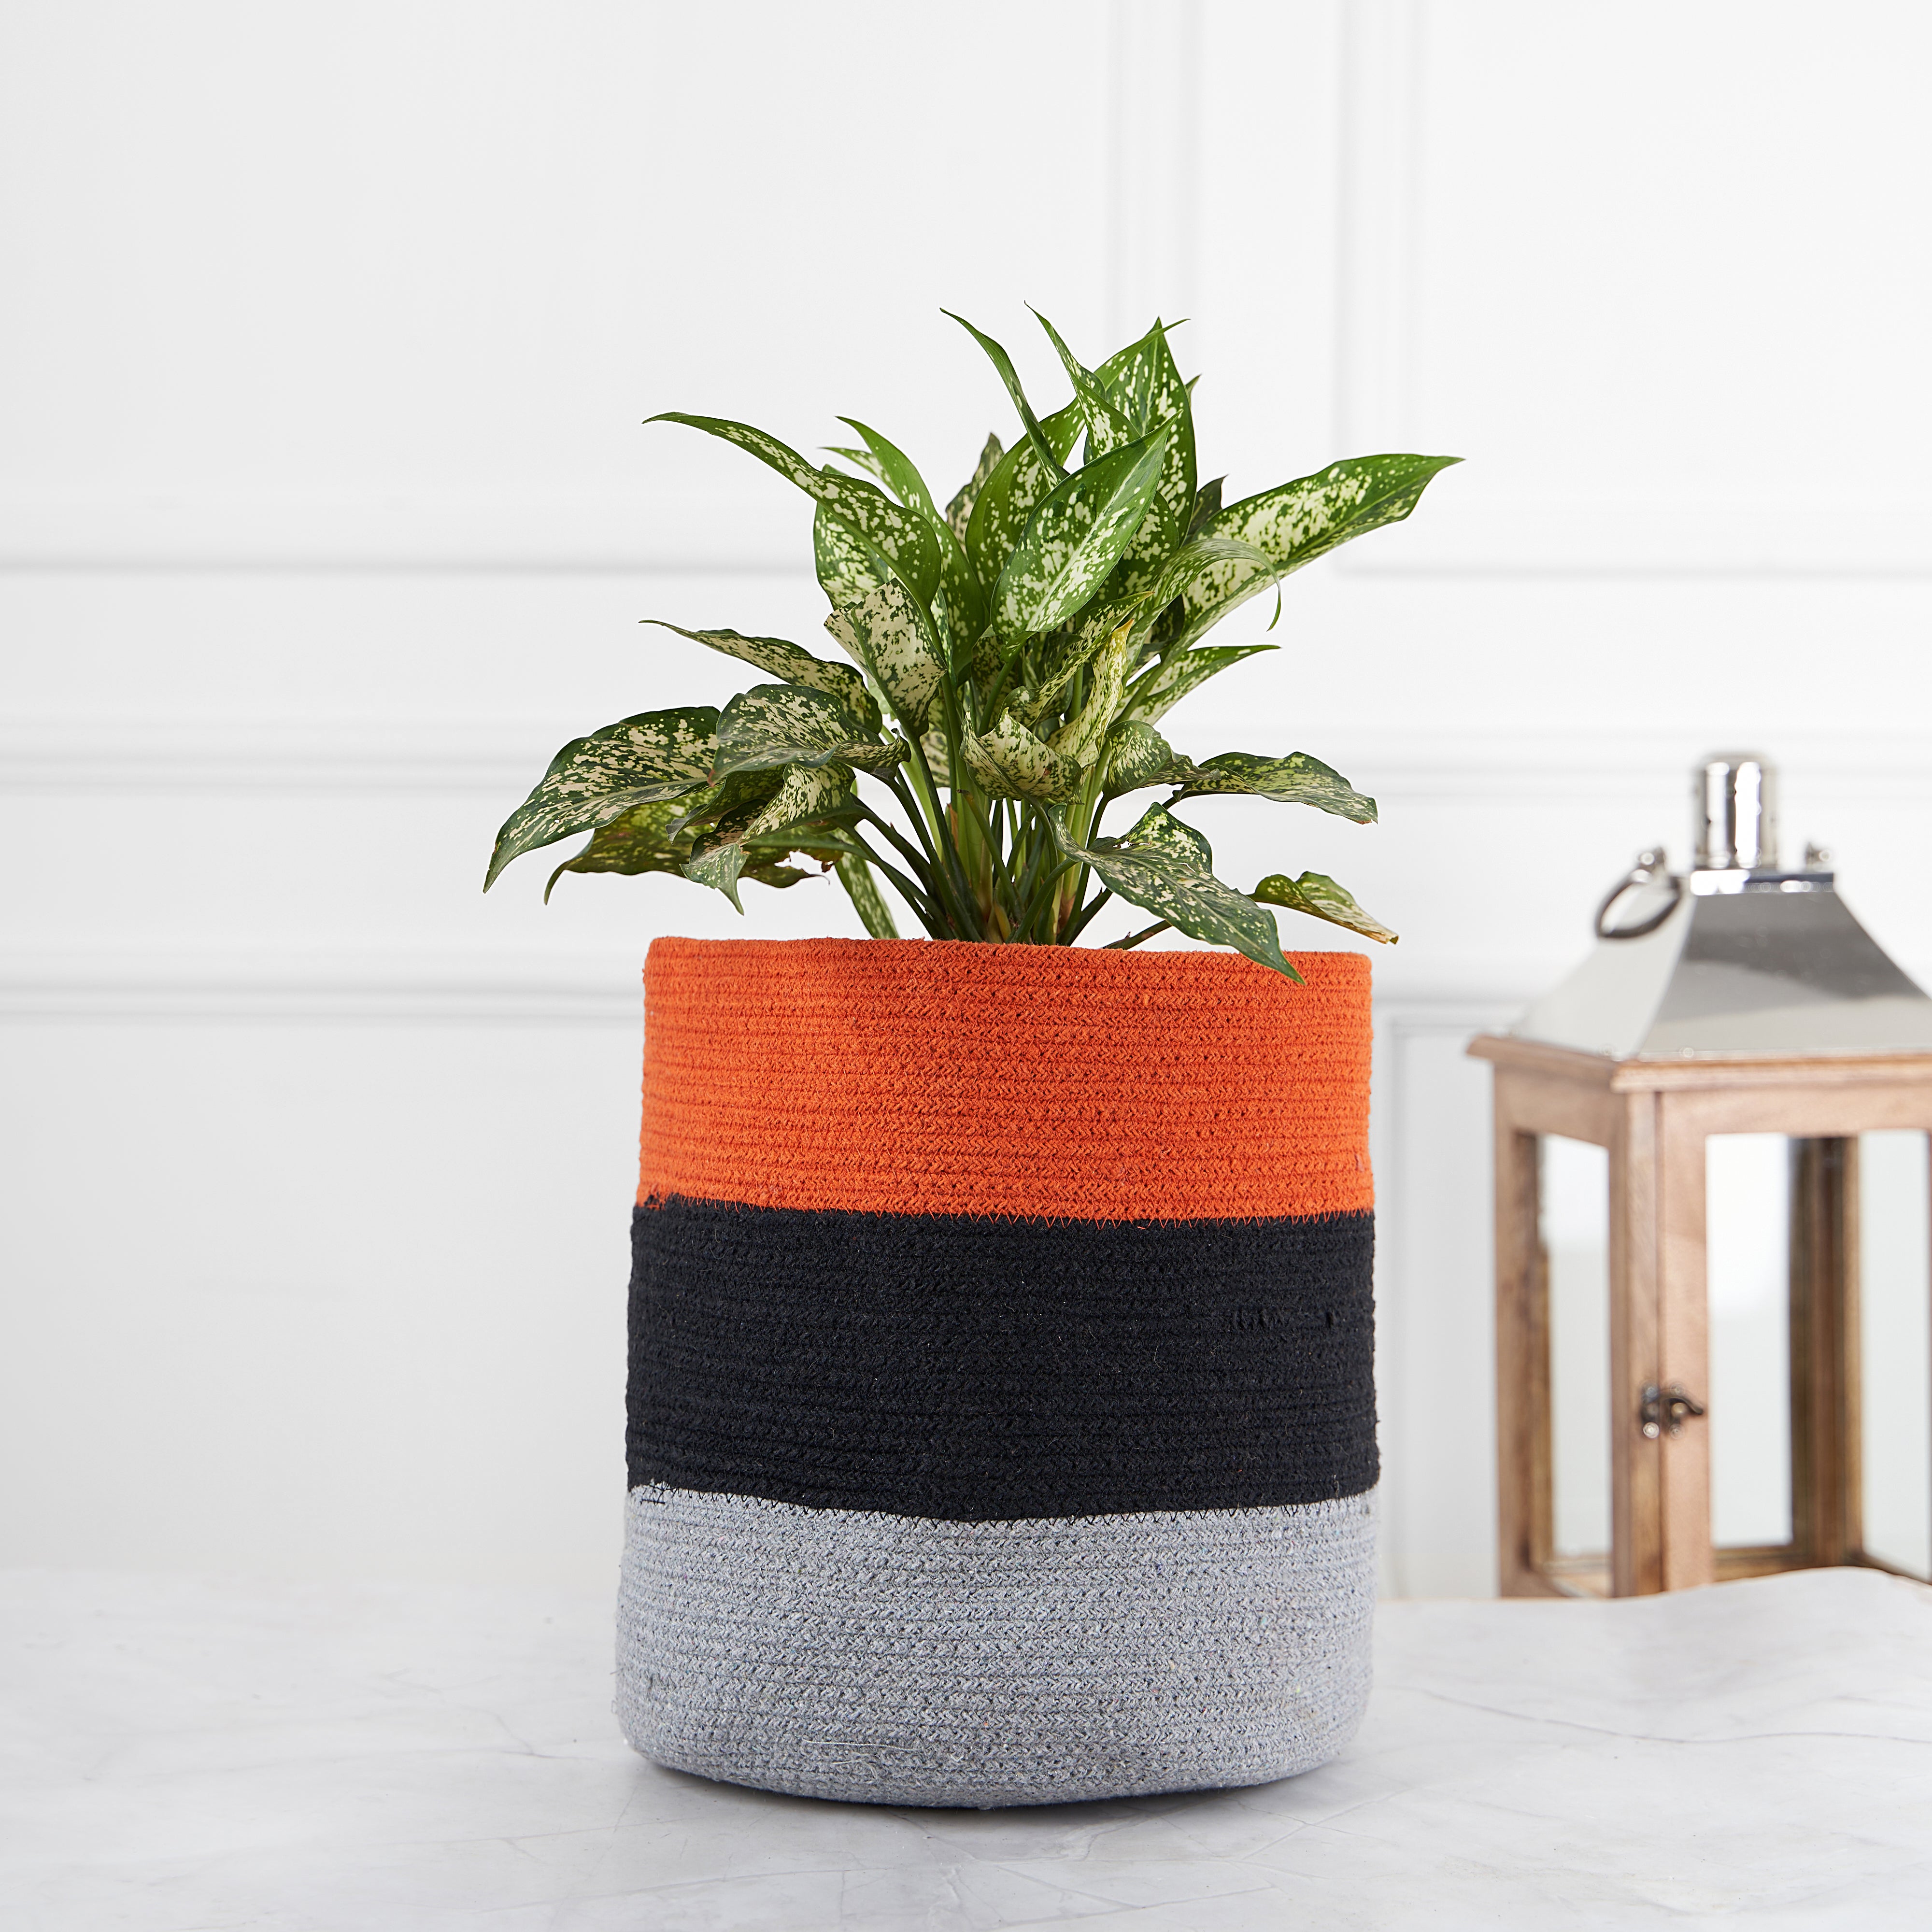 Designer Braided Cotton Planter/Basket Orange, Black & Grey